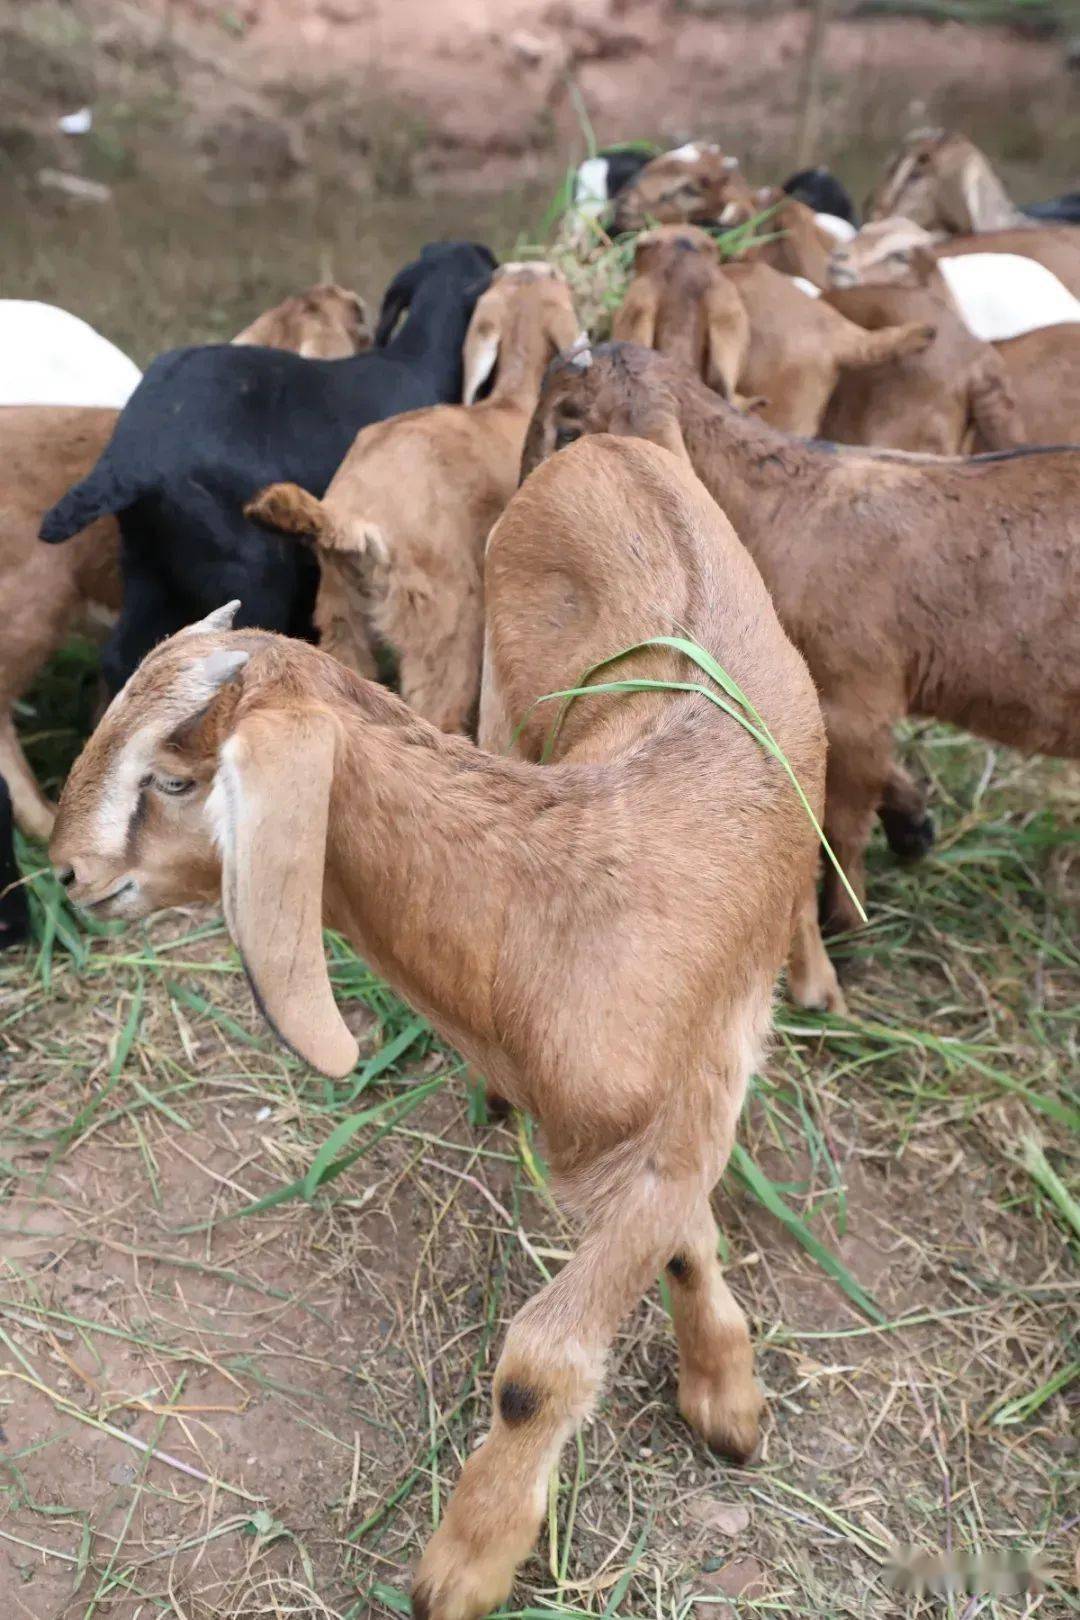 简州大耳羊是由努比山羊与简阳本地山羊杂交培育形成的肉用山羊新品种